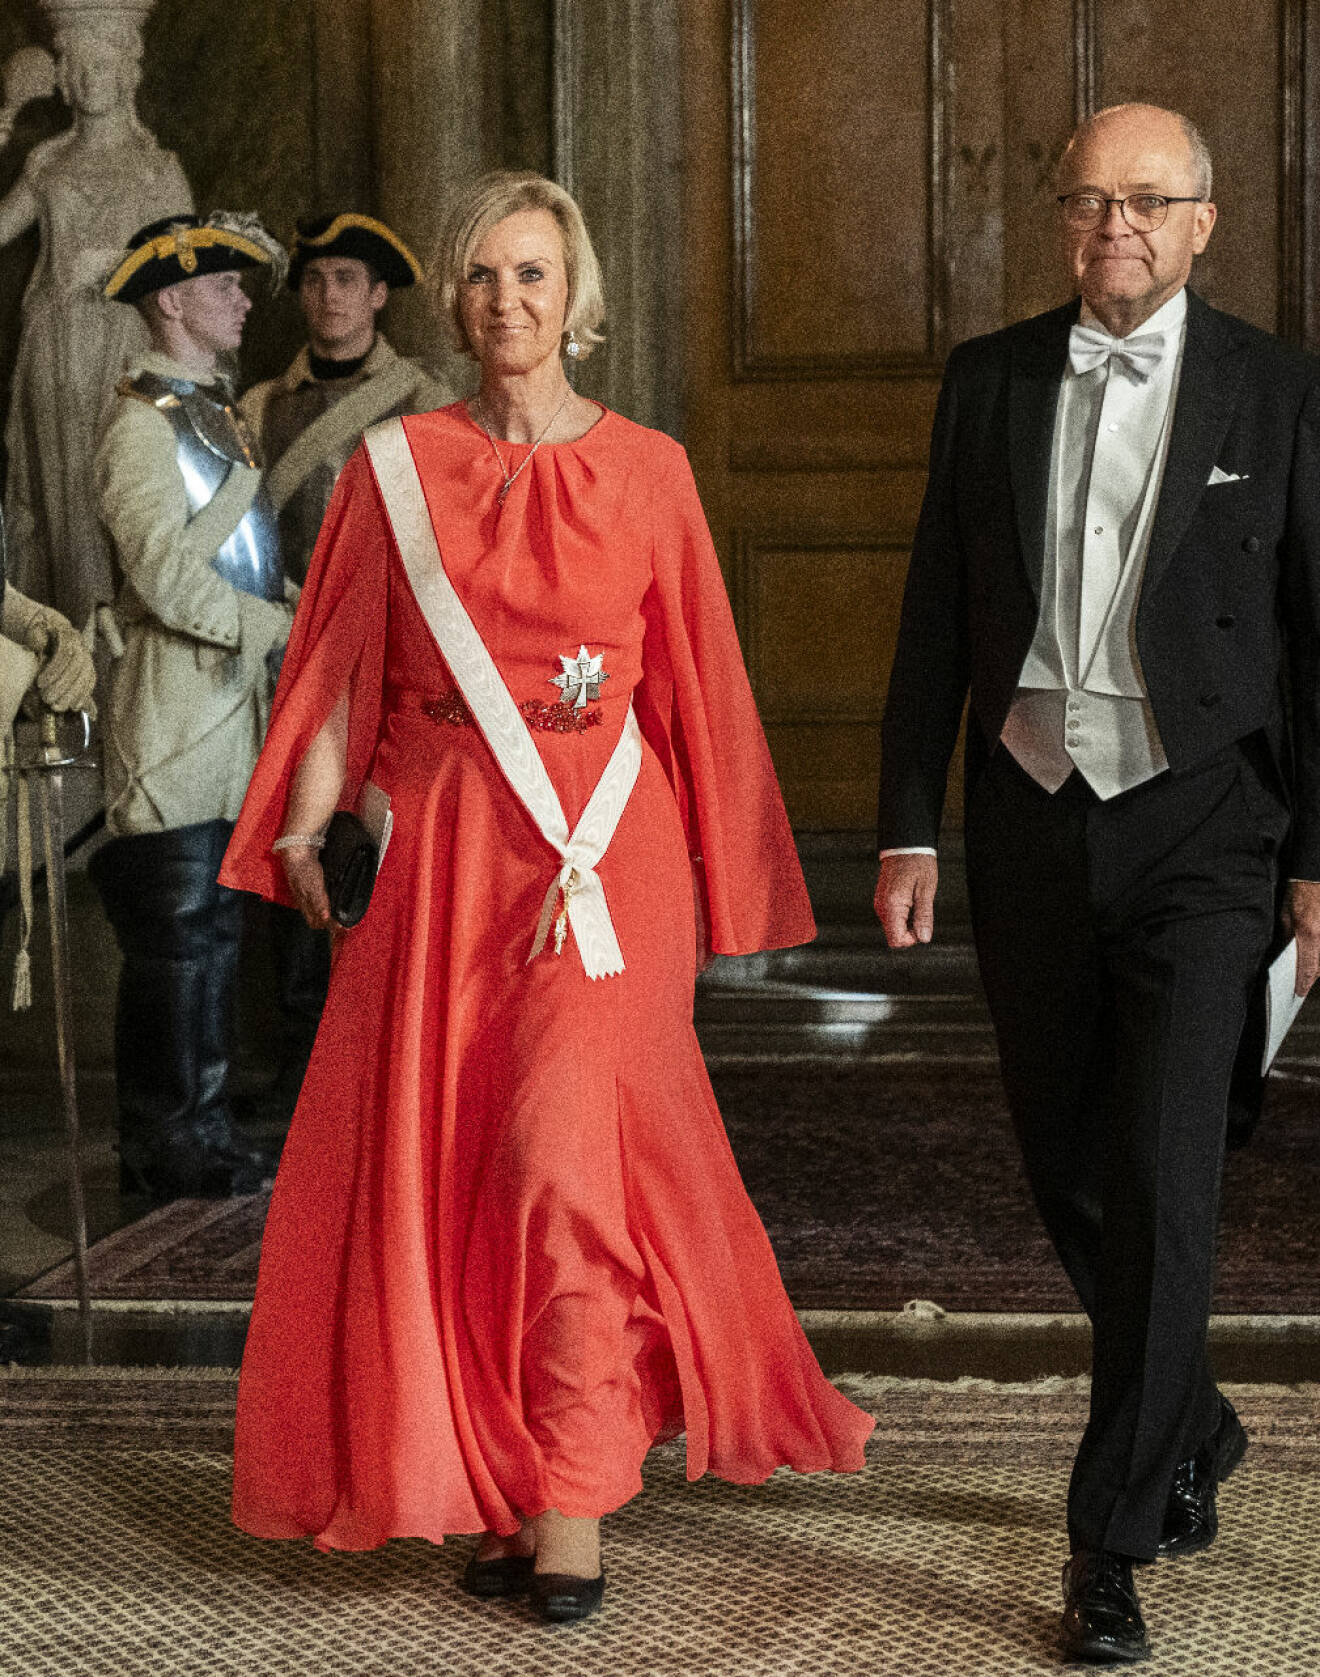 Sveriges ambassadör i Danmark Charlotte Wrangberg med sin man Håkan Wrangberg